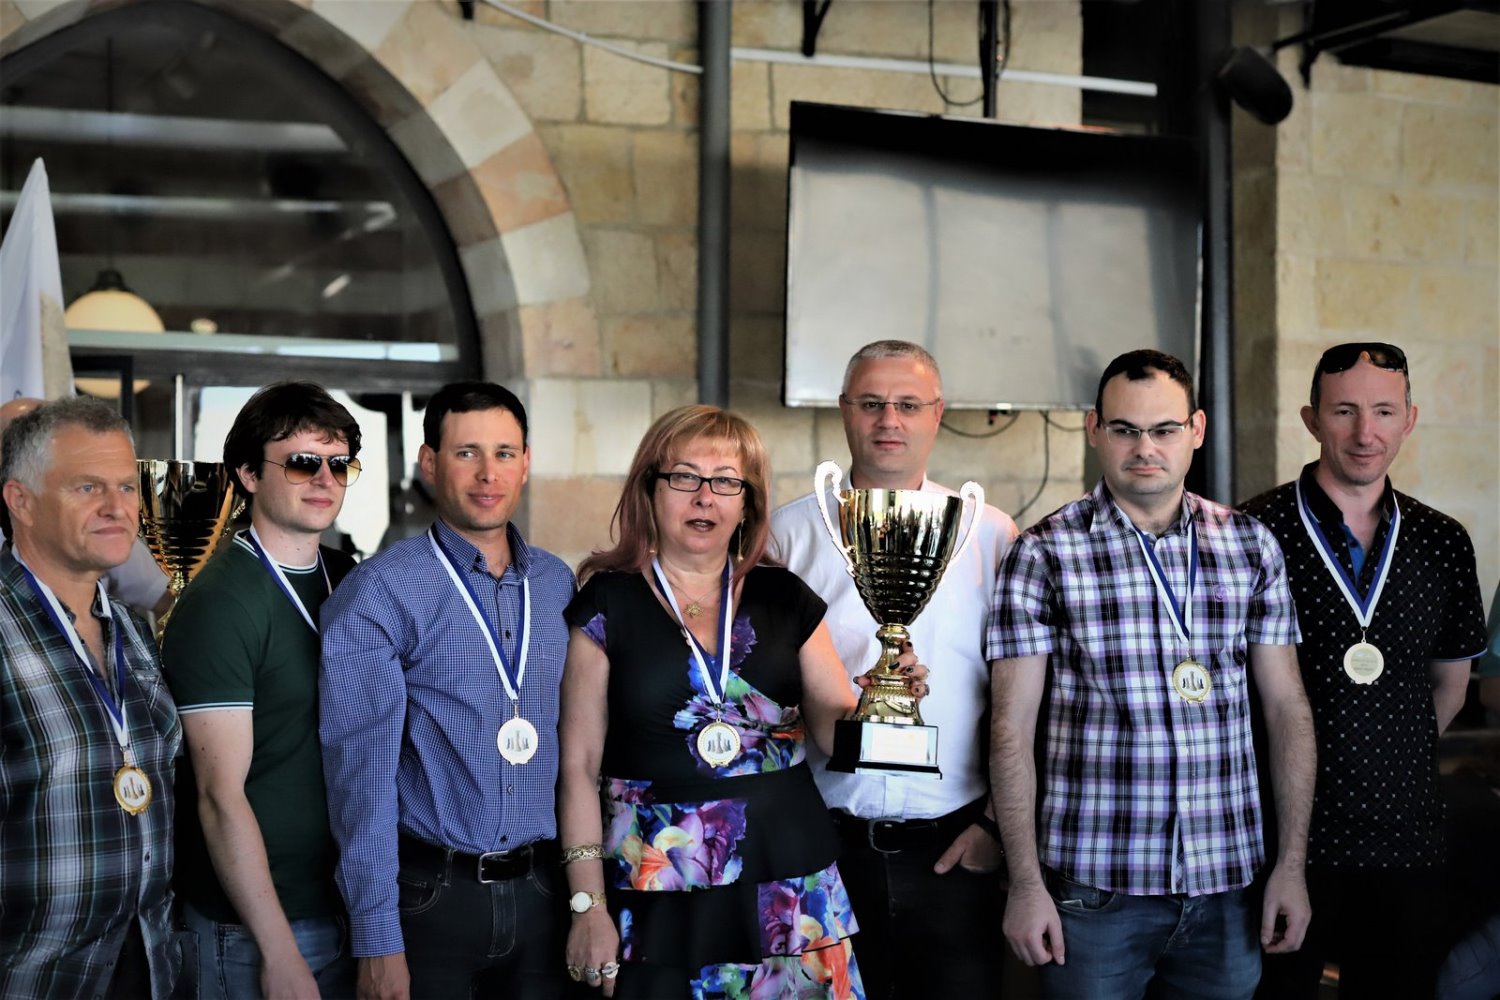 שחקני נבחרת השחמט של באר שבע לאחר הזכייה בגביע | צילום: ד''ר מרק ליפשיץ, מועדון השחמט באר שבע